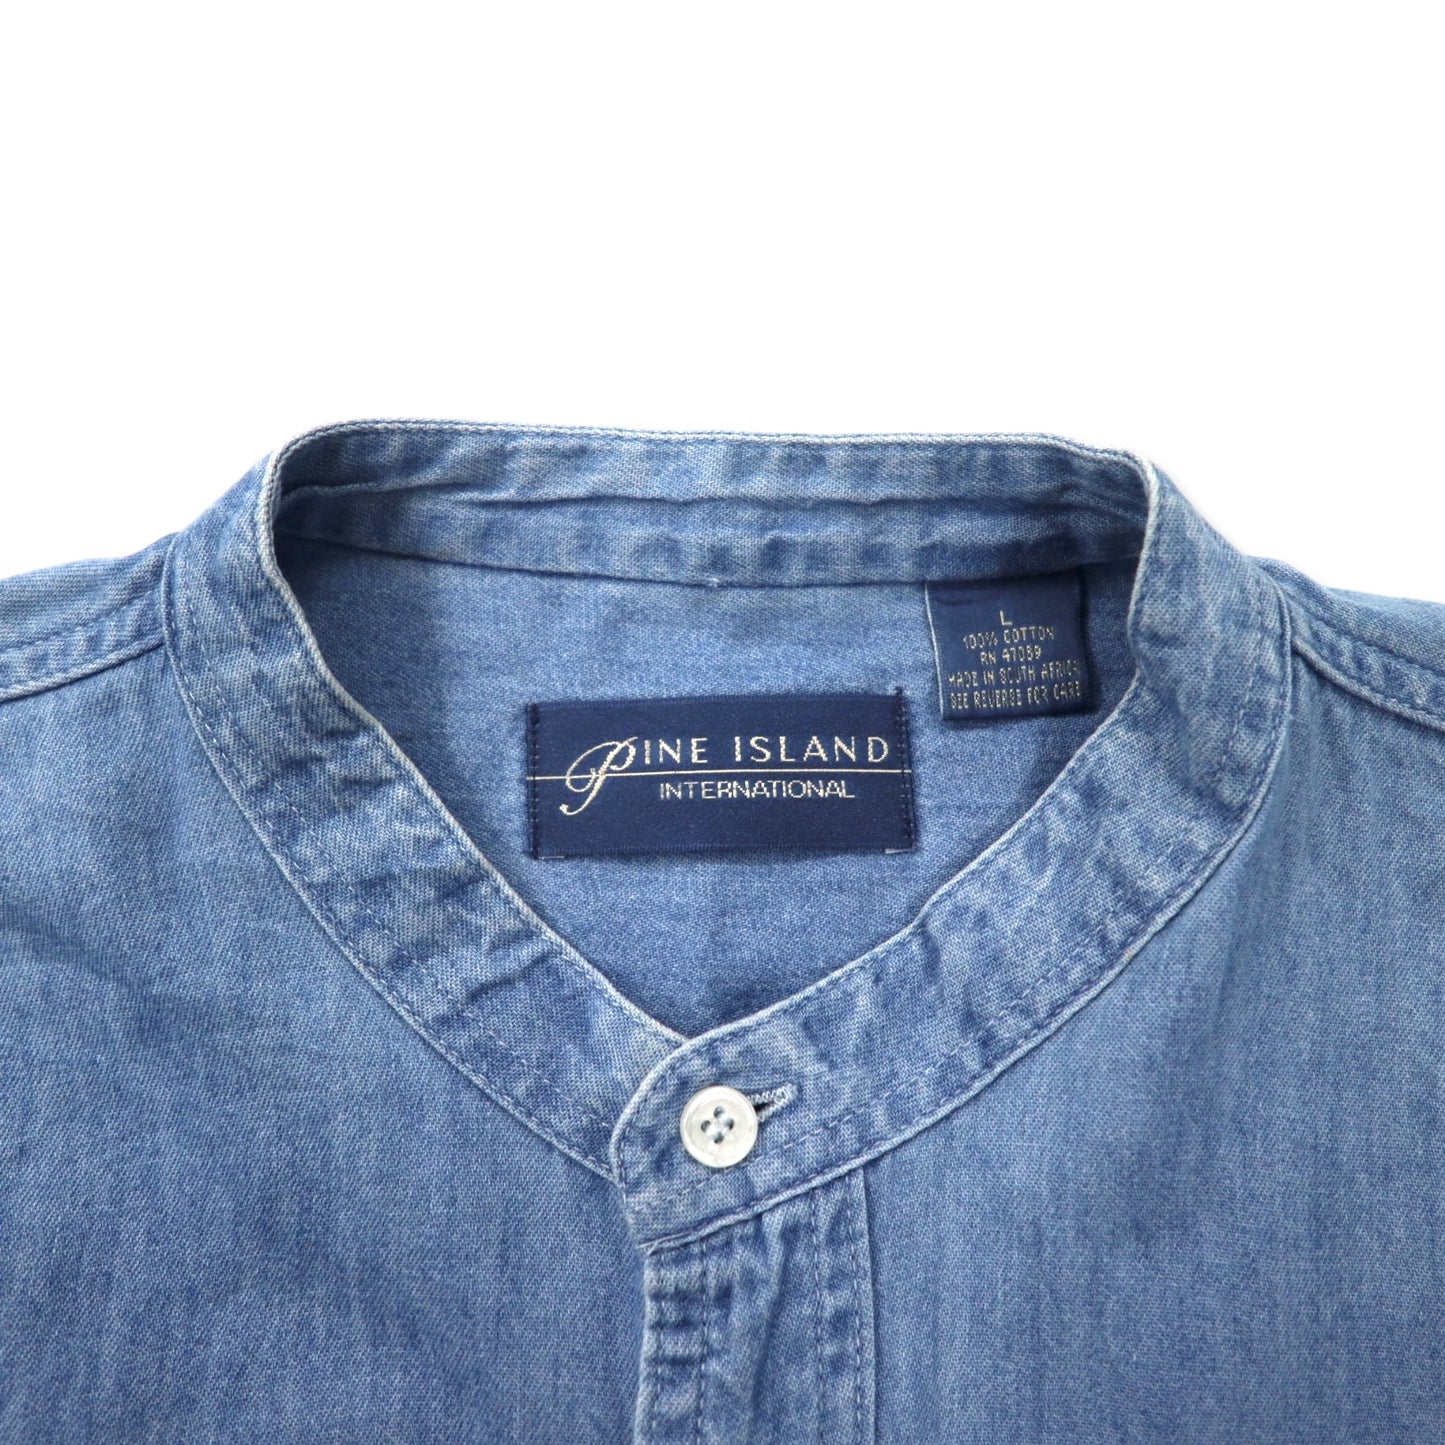 FINE ISLAND 90年代 スタンドカラー デニムシャツ L ブルー コットン ビッグサイズ